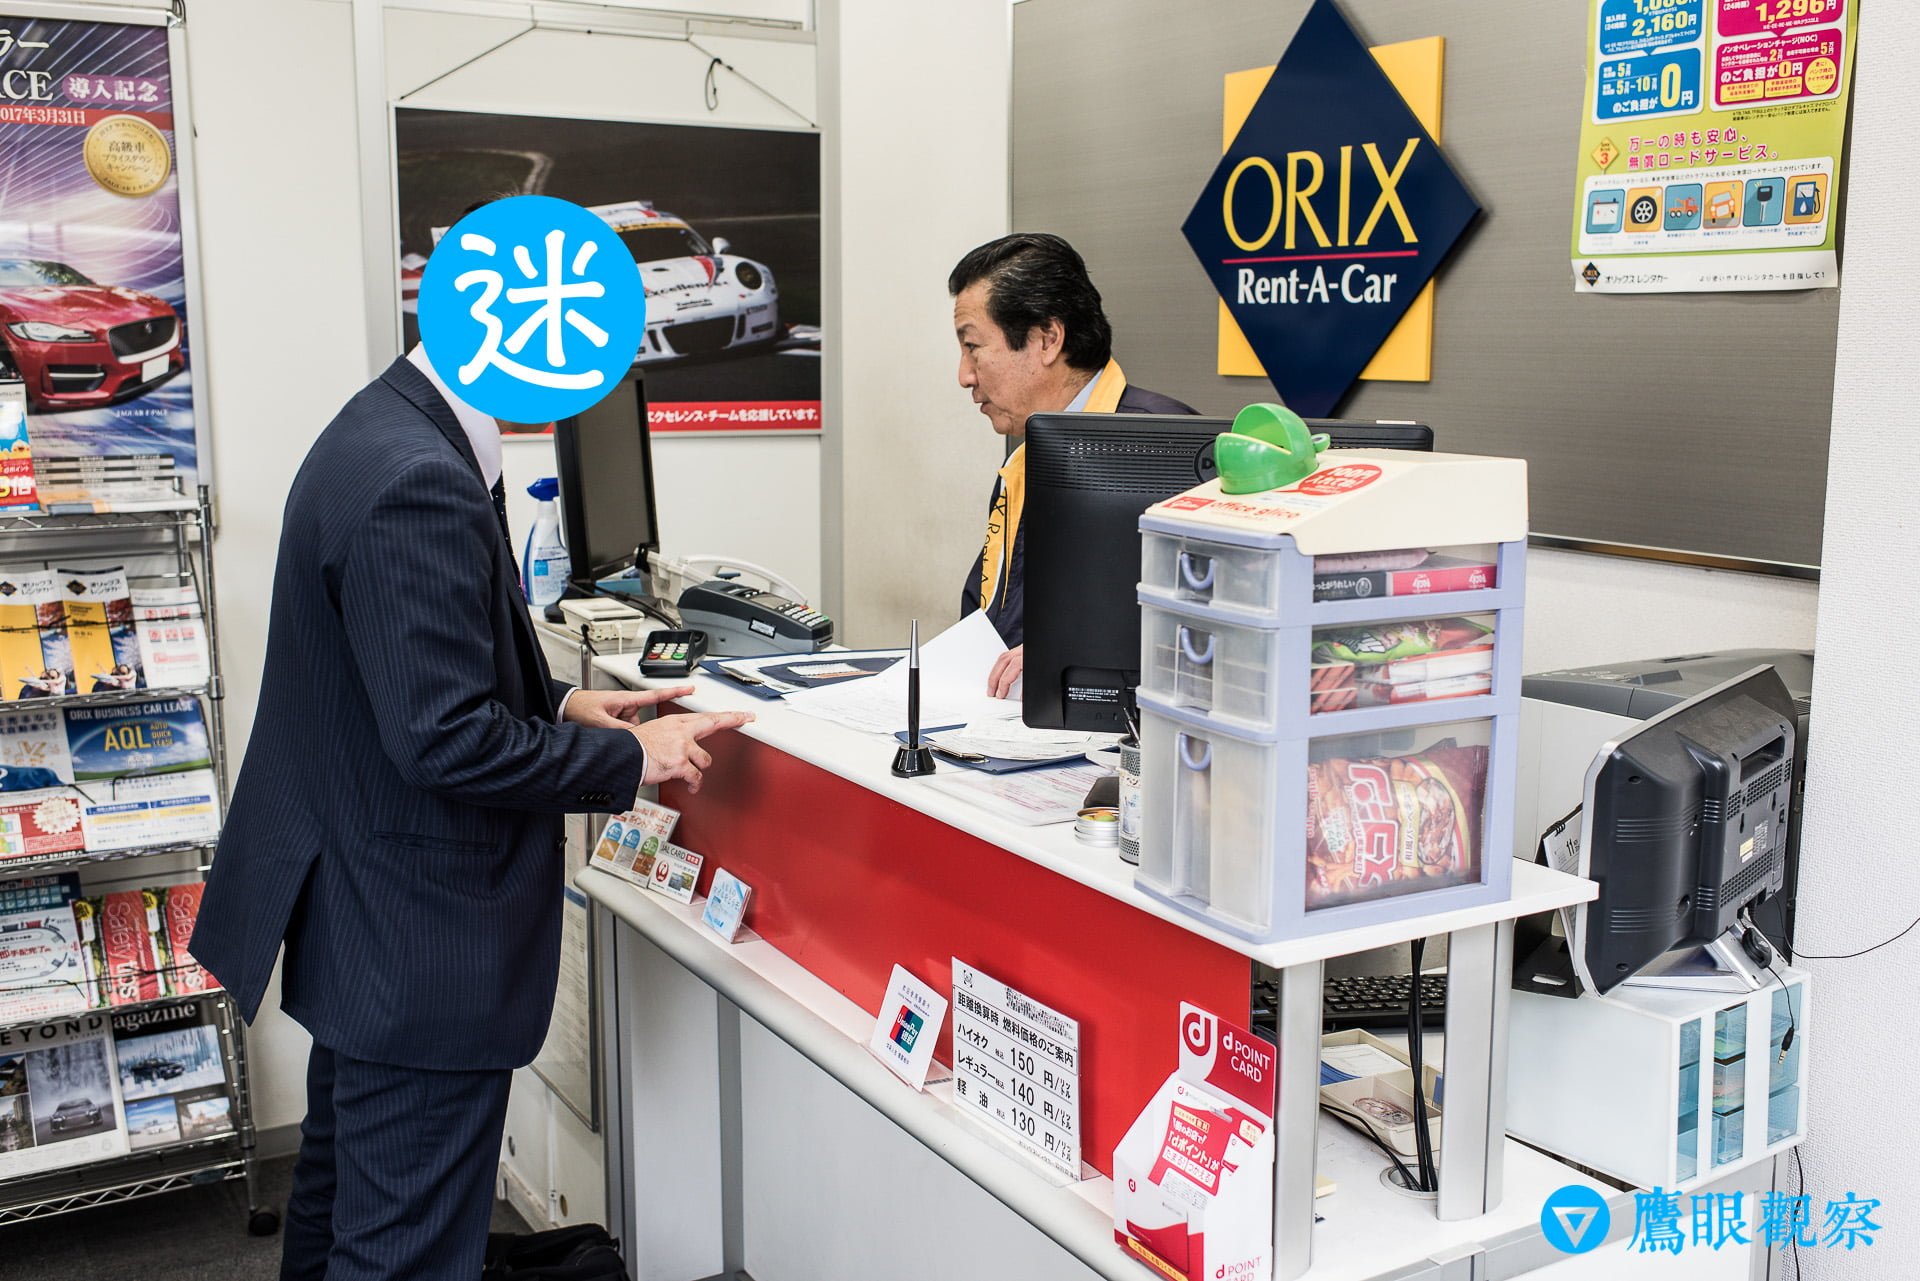 日本租車：從東京機場自駕暢遊北關東 3 縣的旅遊行程預定、租取還車教學 Rental Cars in Airport Tokyo Japan with Orix 5